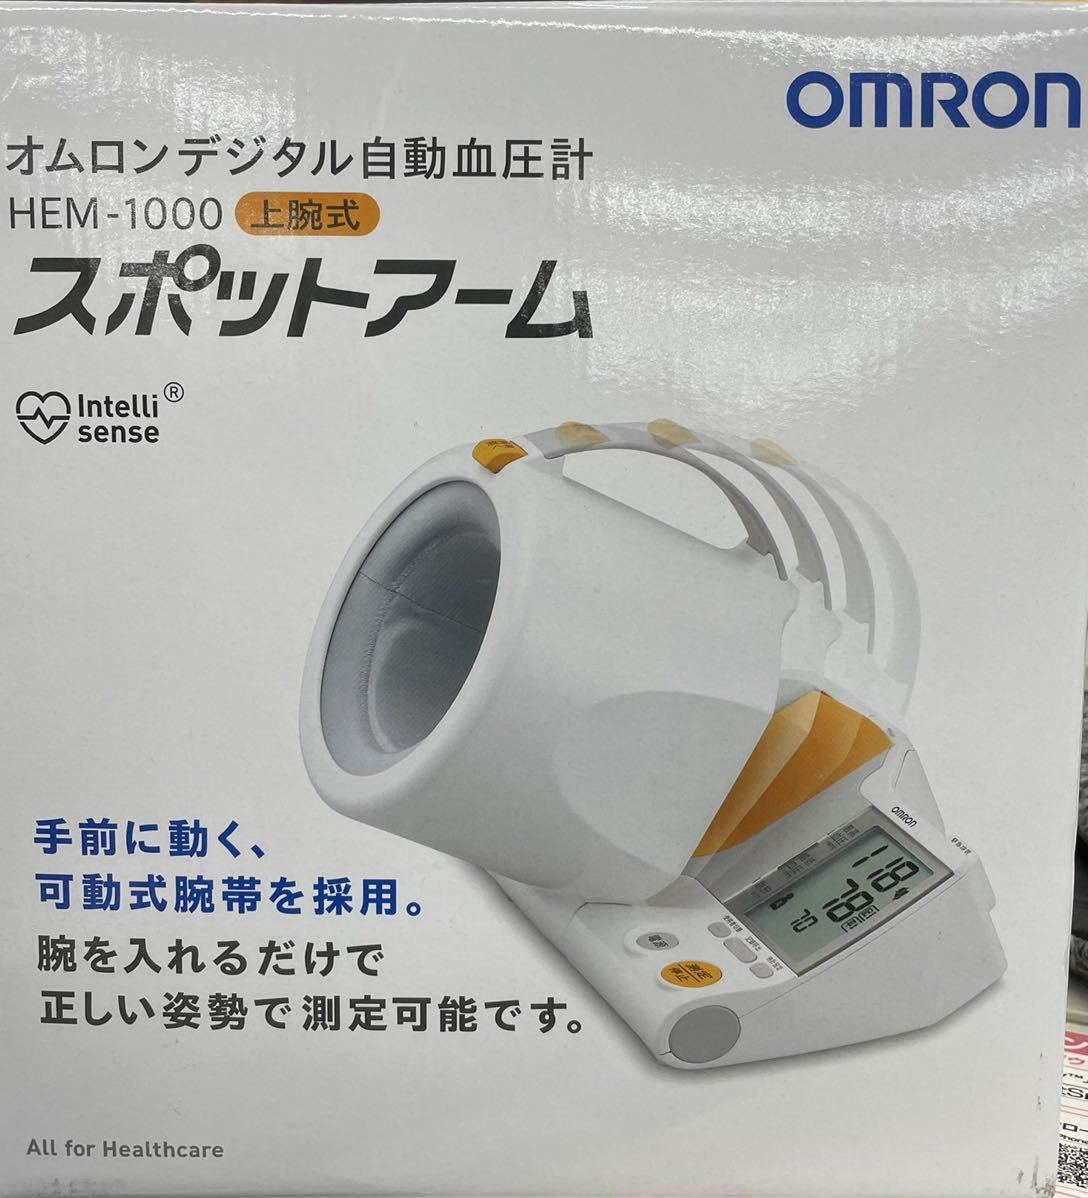 送料無料 新品未開封 OMRON HEM-1000 デジタル自動血圧計 上腕式 スポットアーム 可動式腕帯_画像1